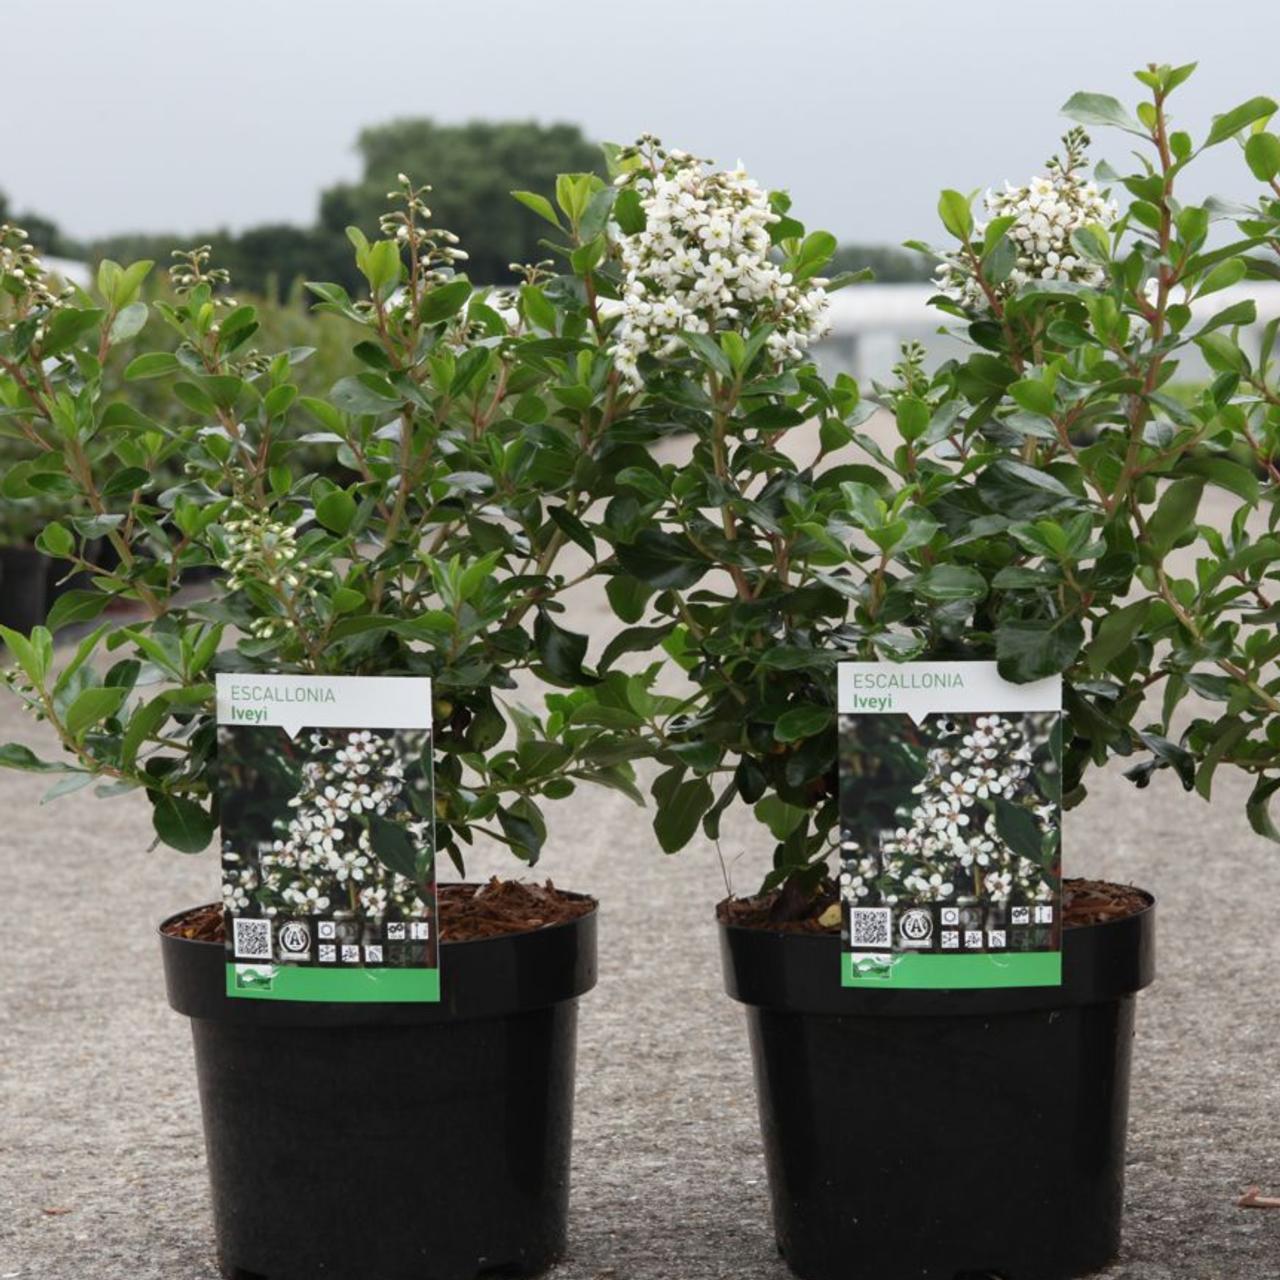 escallonia 'iveyi' - kaufen sie pflanzen bei coolplants